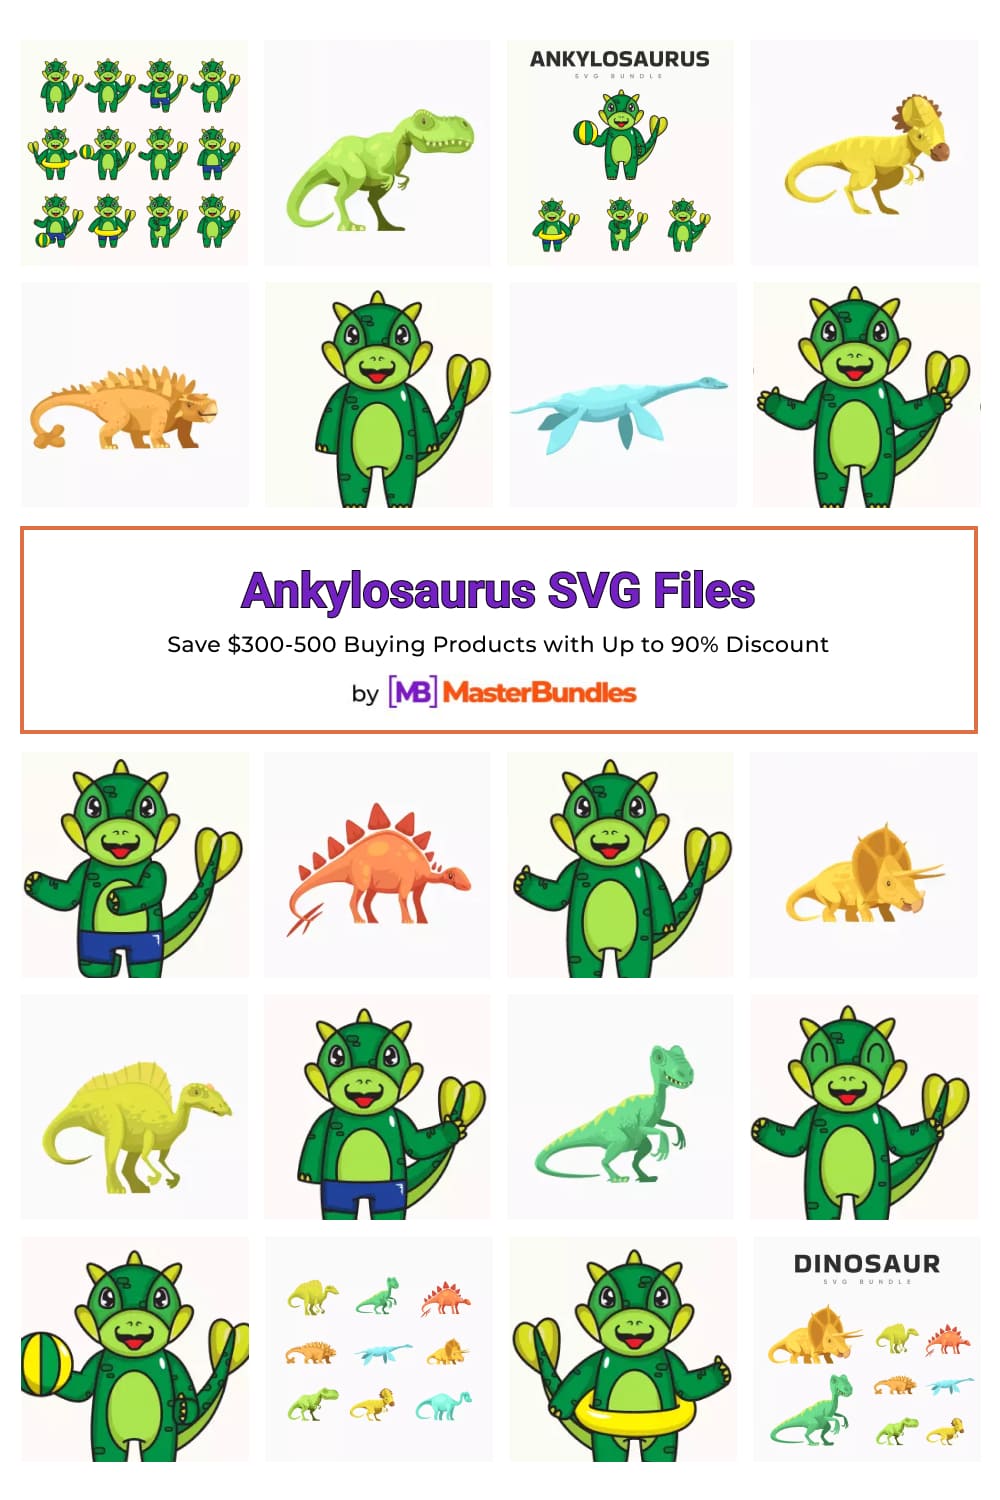 Ankylosaurus SVG Files Pinterest image.